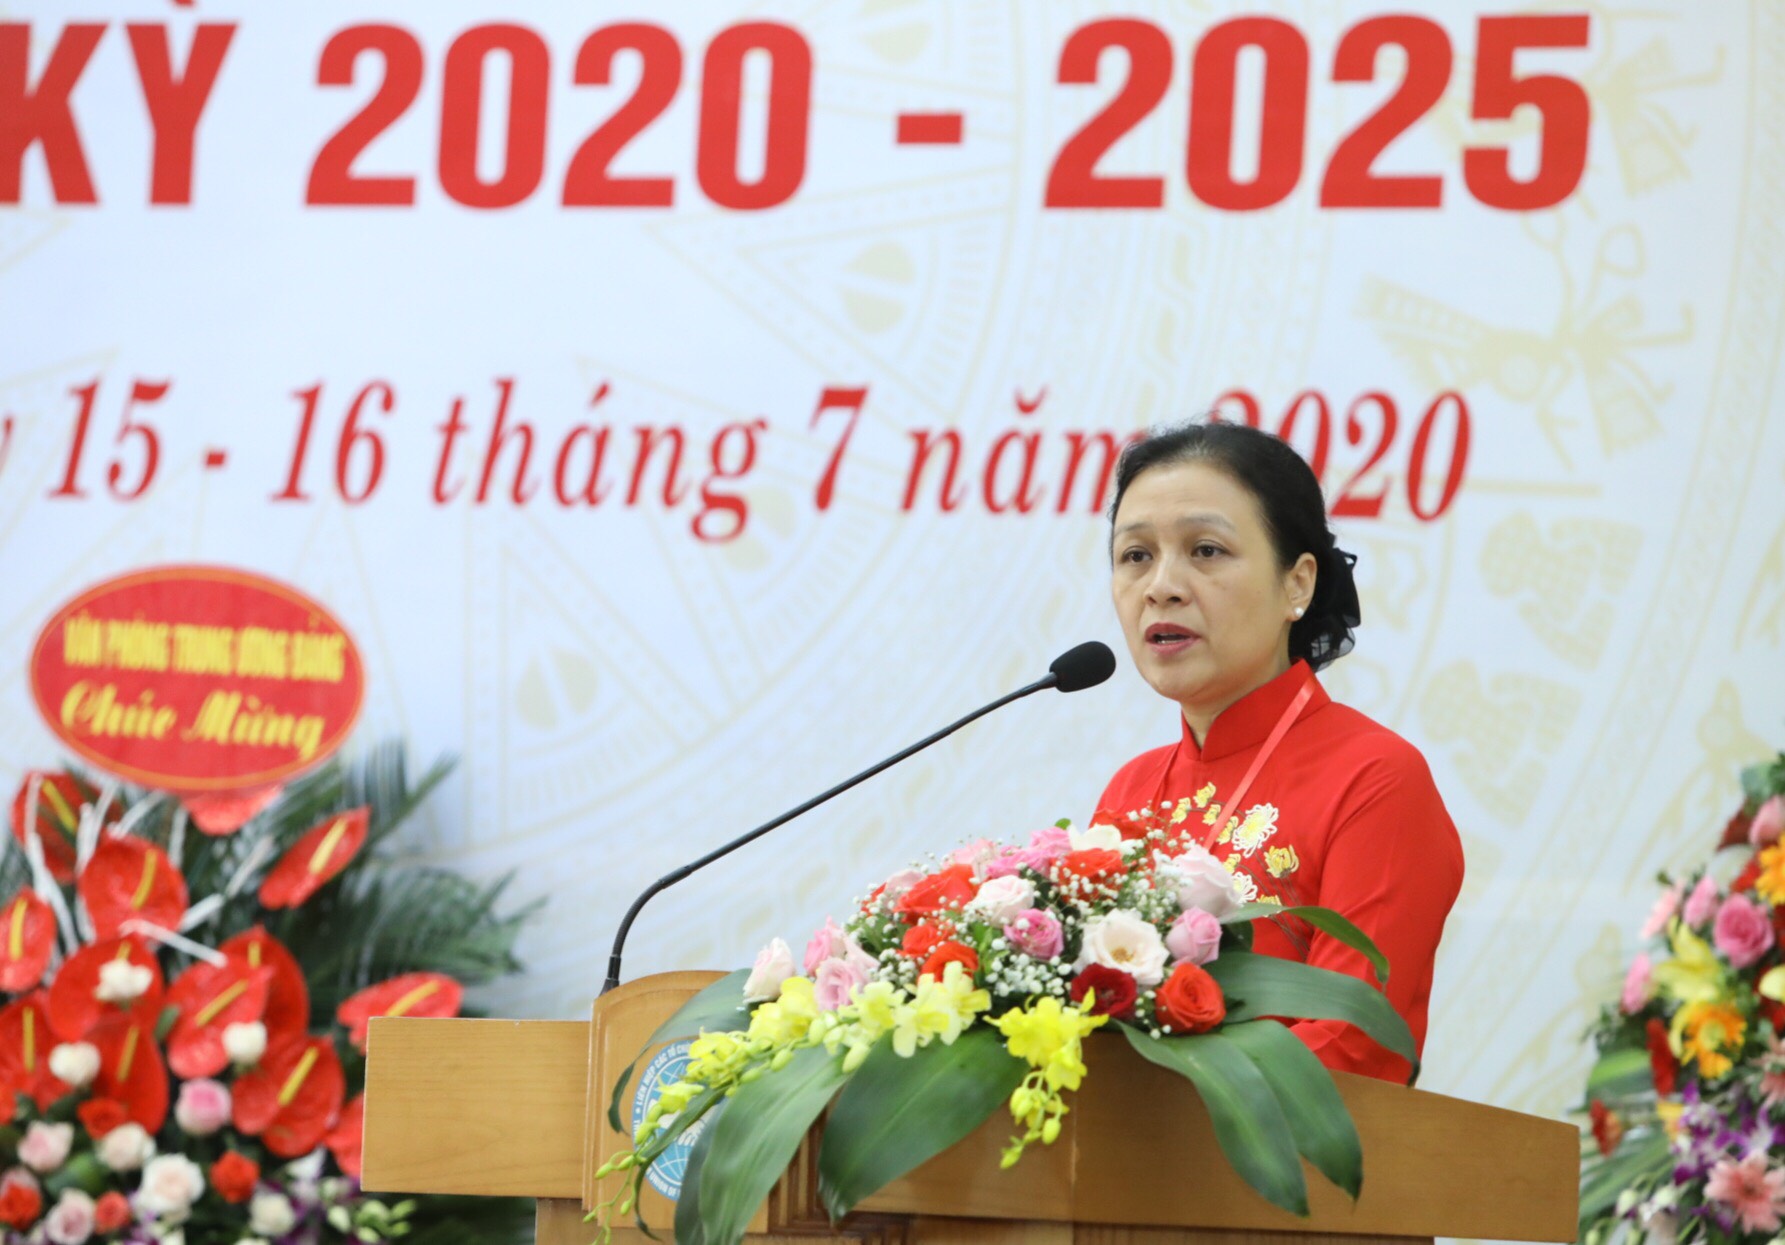 Đồng chí Nguyễn Phương Nga, Bí thư Đảng đoàn, Bí thư Đảng ủy khóa IX, Chủ tịch Liên hiệp các tổ chức hữu nghị Việt Nam phát biểu tại Đại hội.